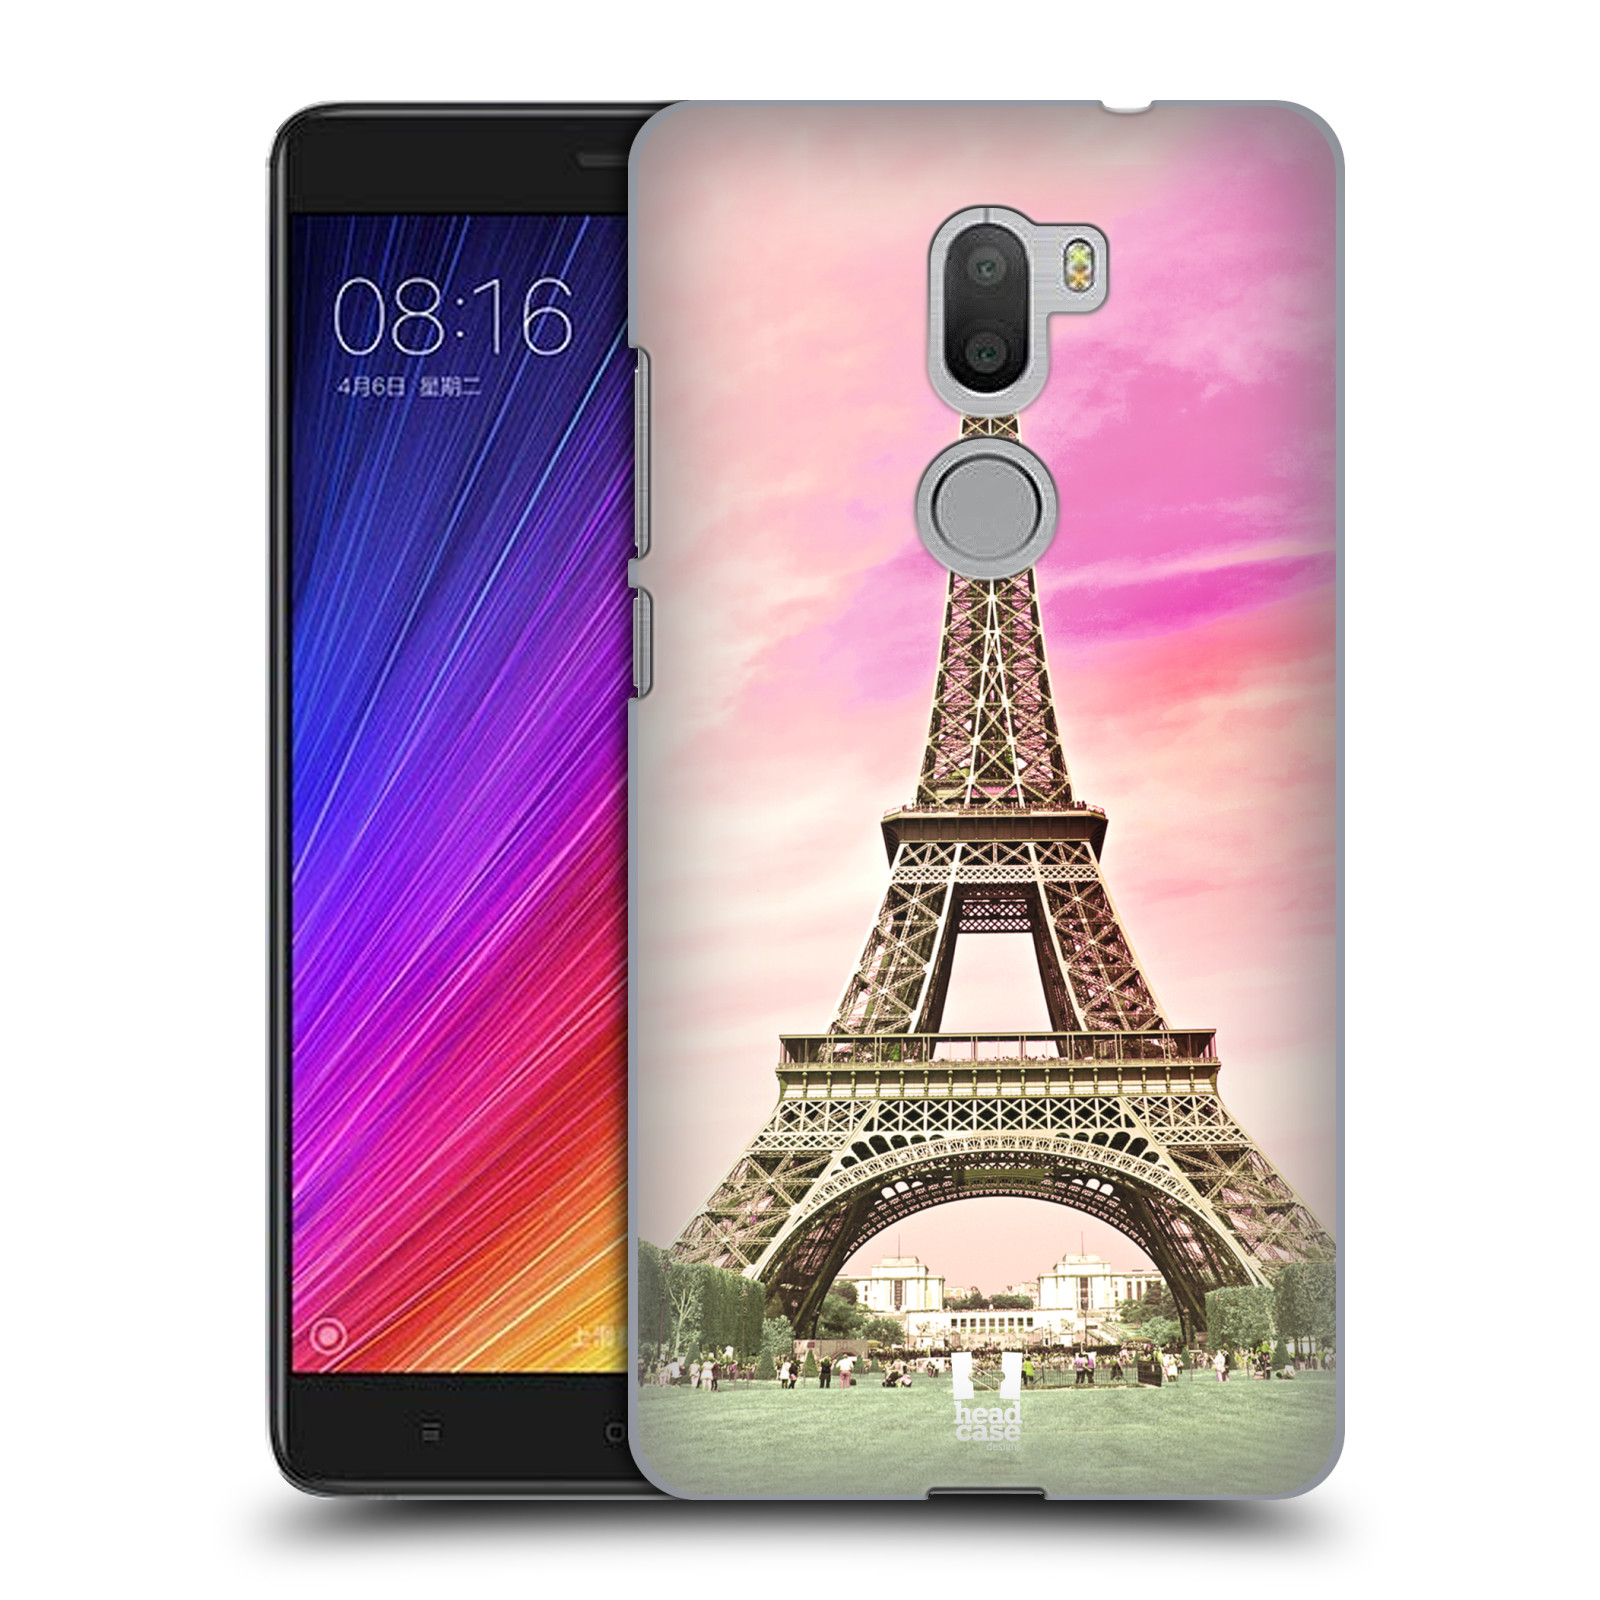 Pouzdro na mobil Xiaomi Mi5s PLUS - HEAD CASE - historická místa Eiffelova věž Paříž